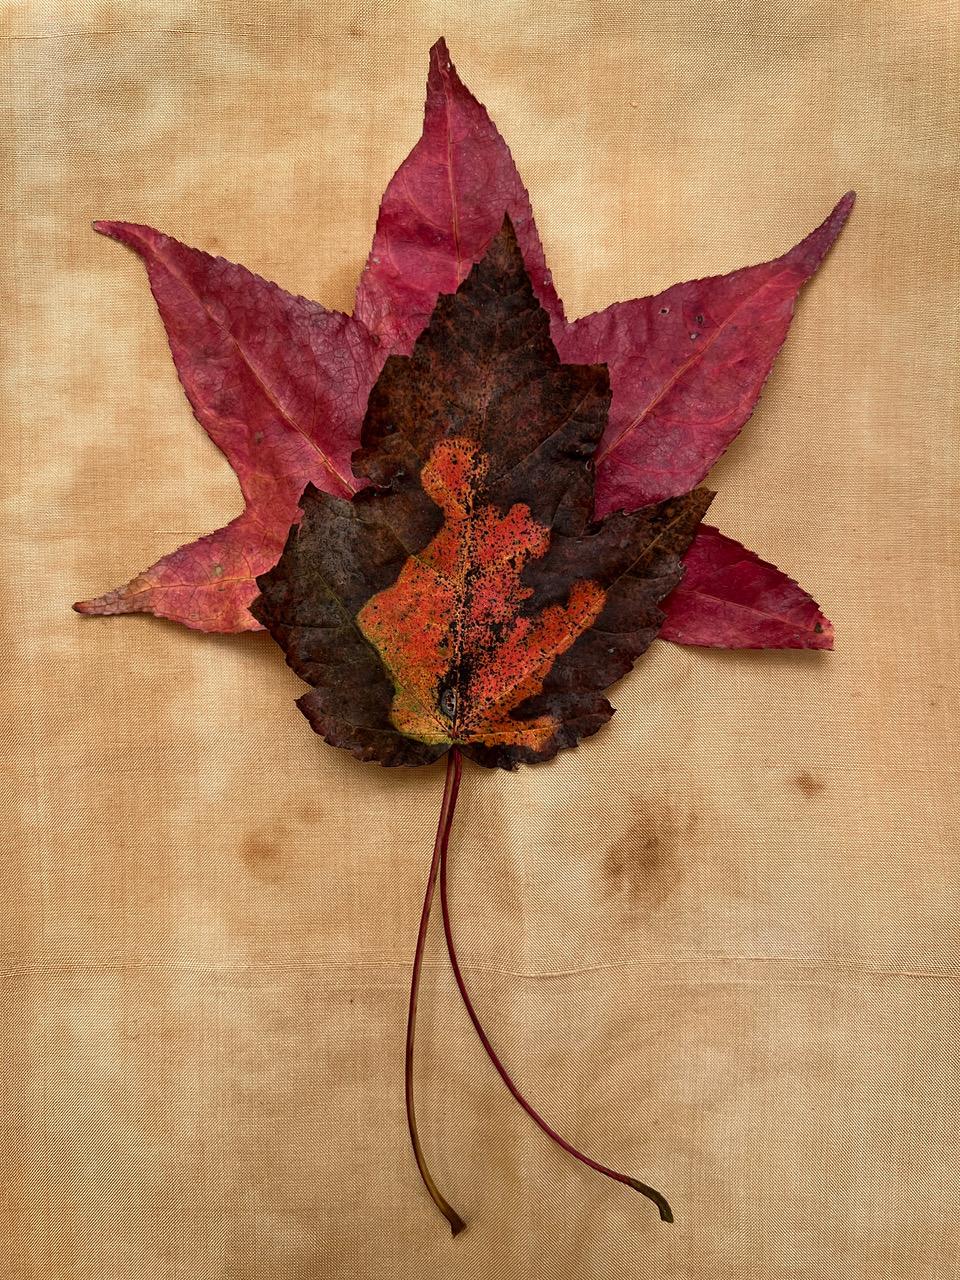 Ohne Titel #3440 aus der Serie "Leaves": Natur-Stillleben-Blattfotografie mit Rot